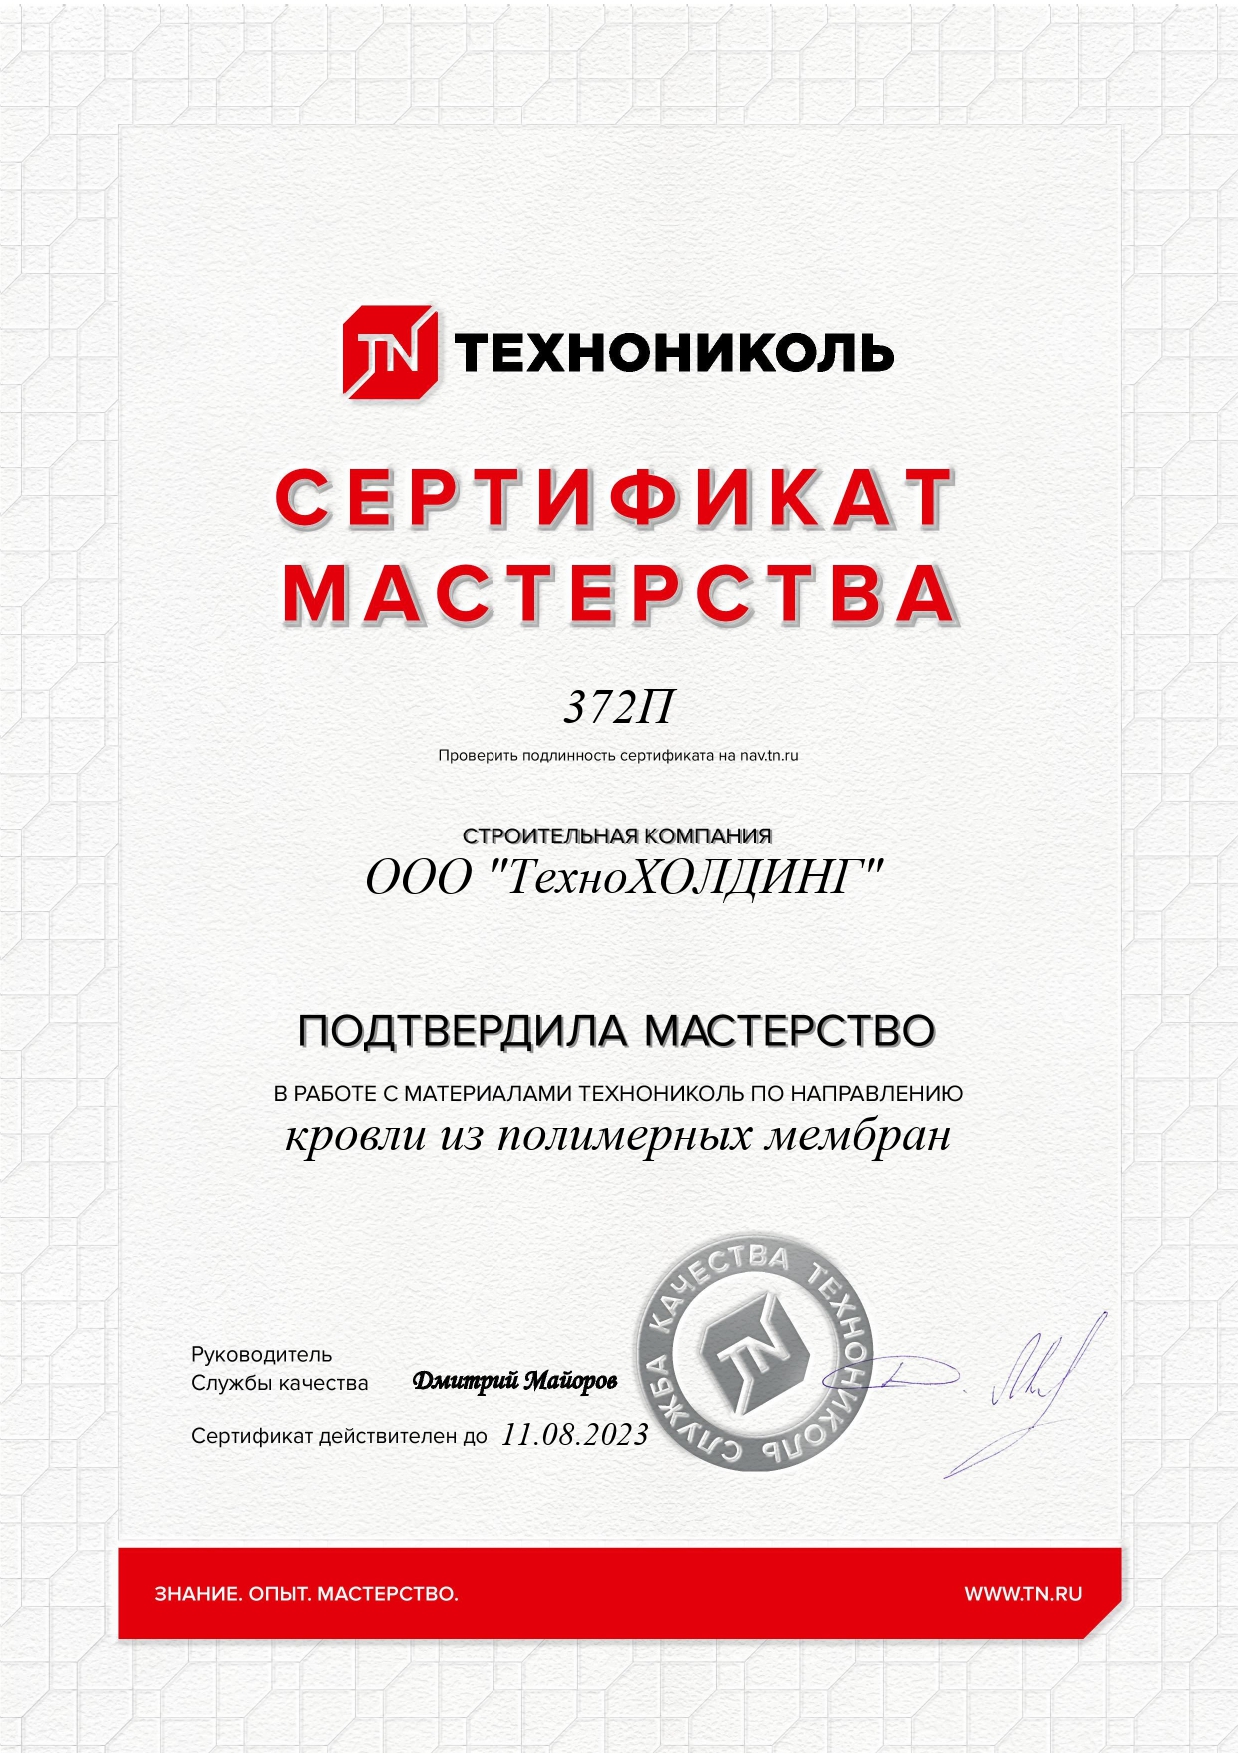 Сертификат мастерства ТехноНиколь